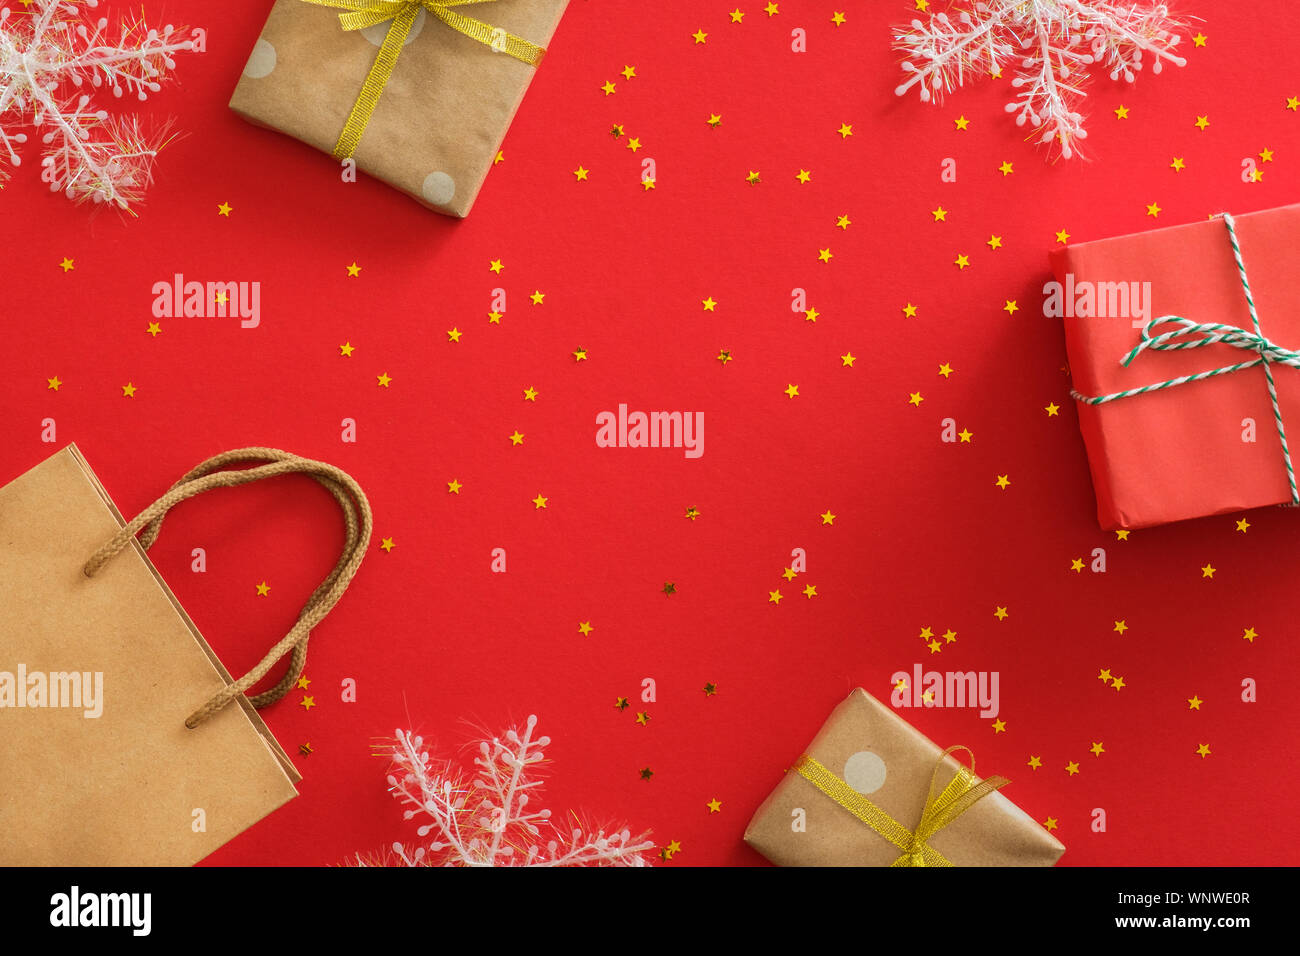 Anno nuovo Natale regali avvolti carta craft, fiocchi di neve, decorazioni, glitter golden coriandoli su sfondo rosso. Vacanze di Natale celebrazione del concetto. Foto Stock